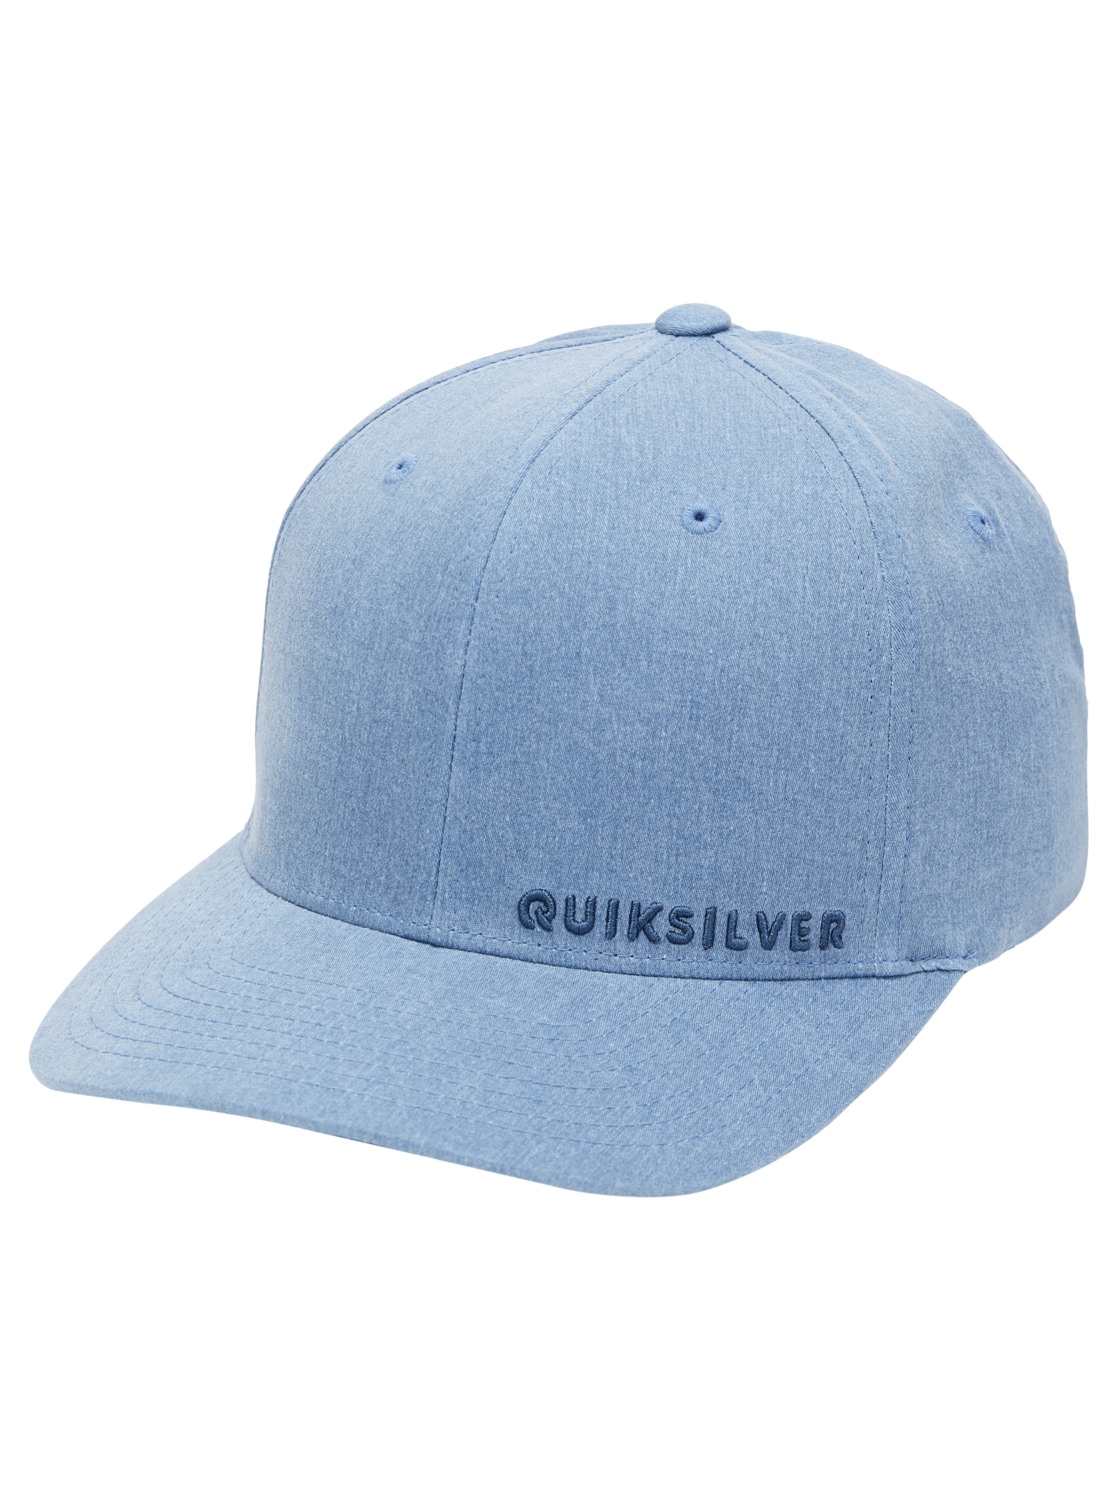 Quiksilver Flex Cap »Sidestay« von Quiksilver